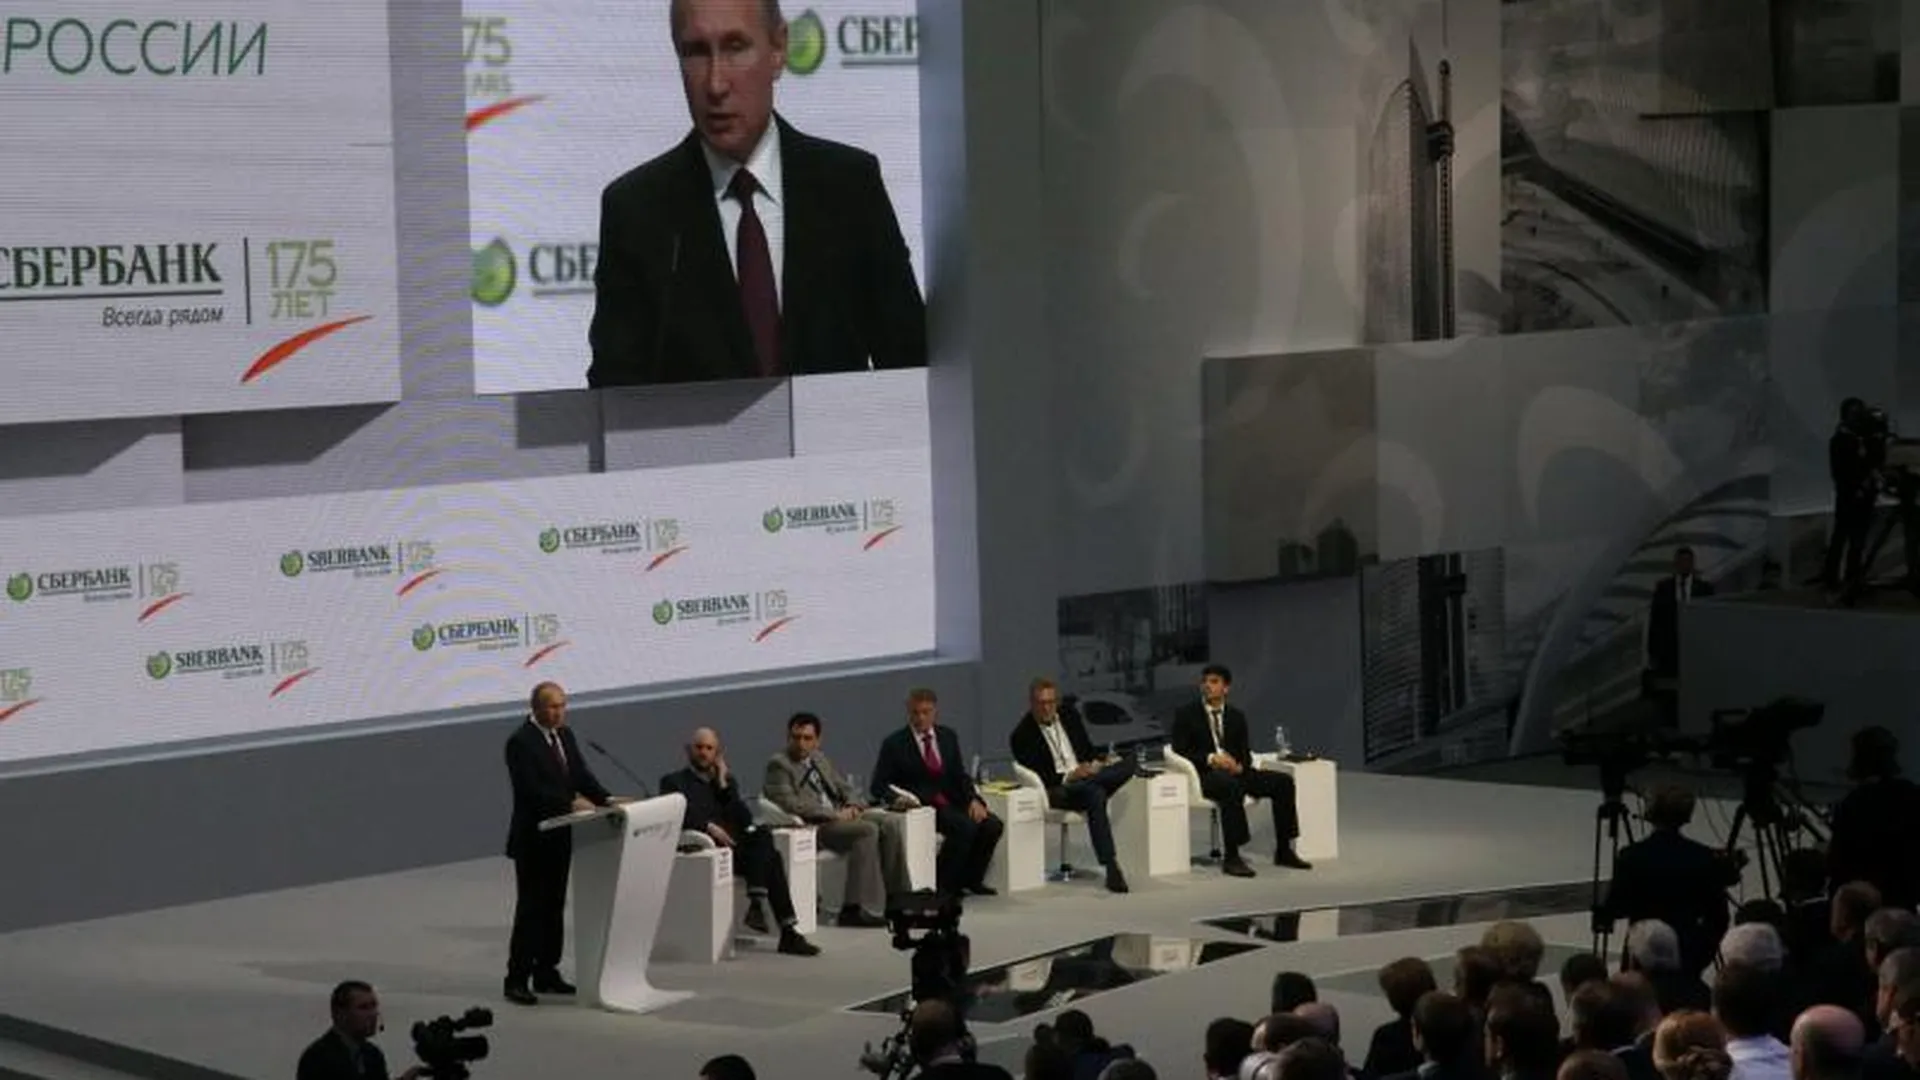 Путин: цифровизация общественной жизни требует надежной защиты